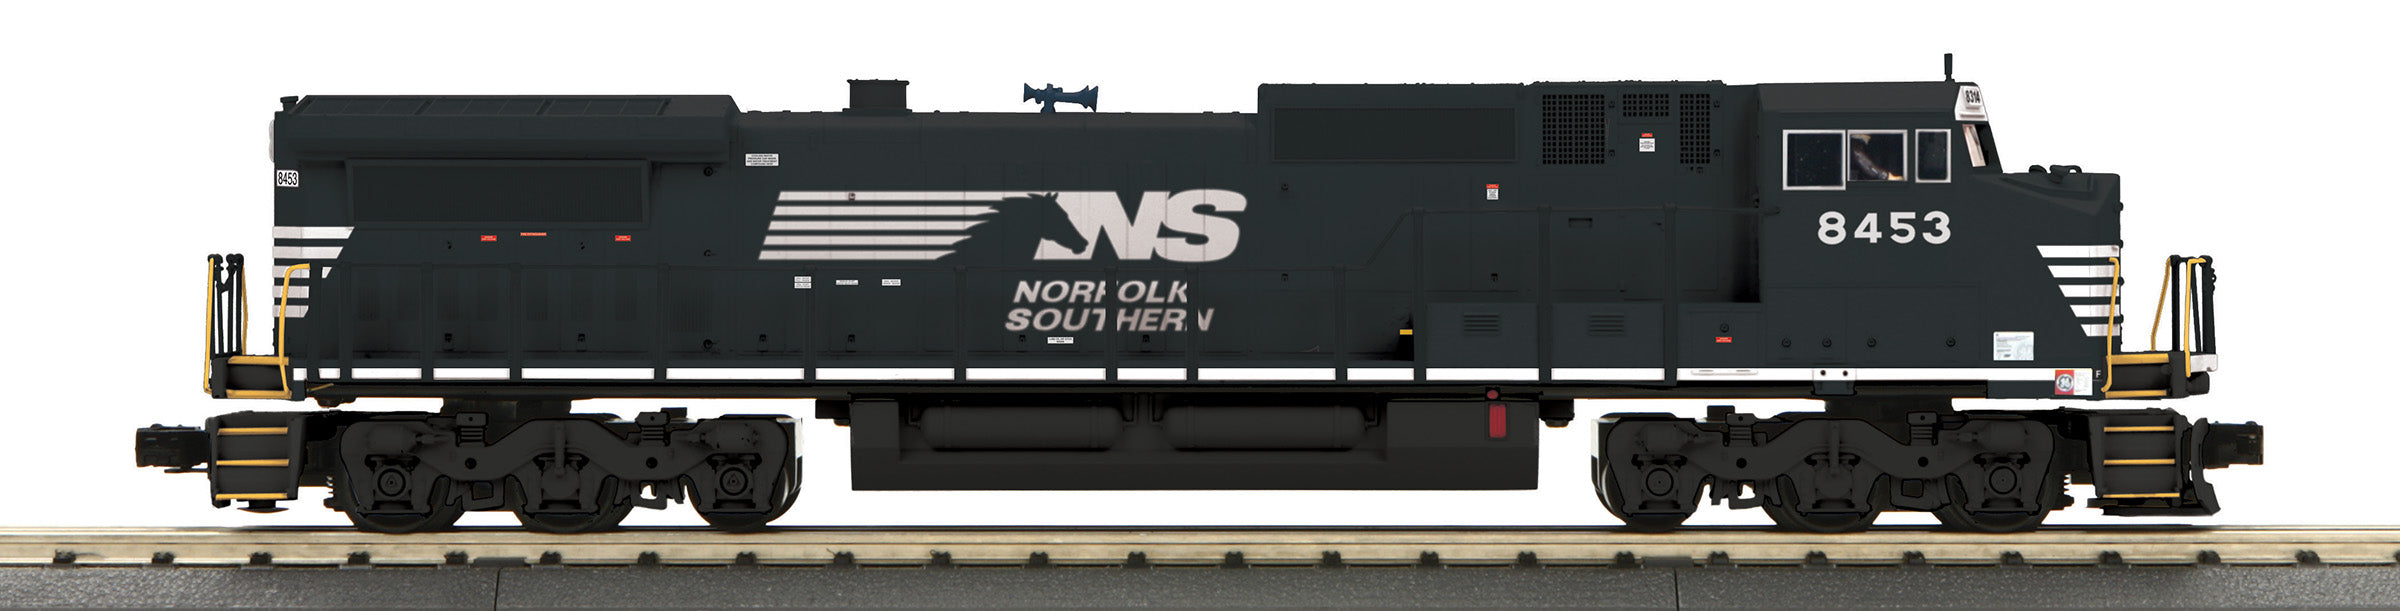 MTH 30-21089-1 - Dash-8 Diesel Engine "Norfolk Southern" #8453 w/ PS3